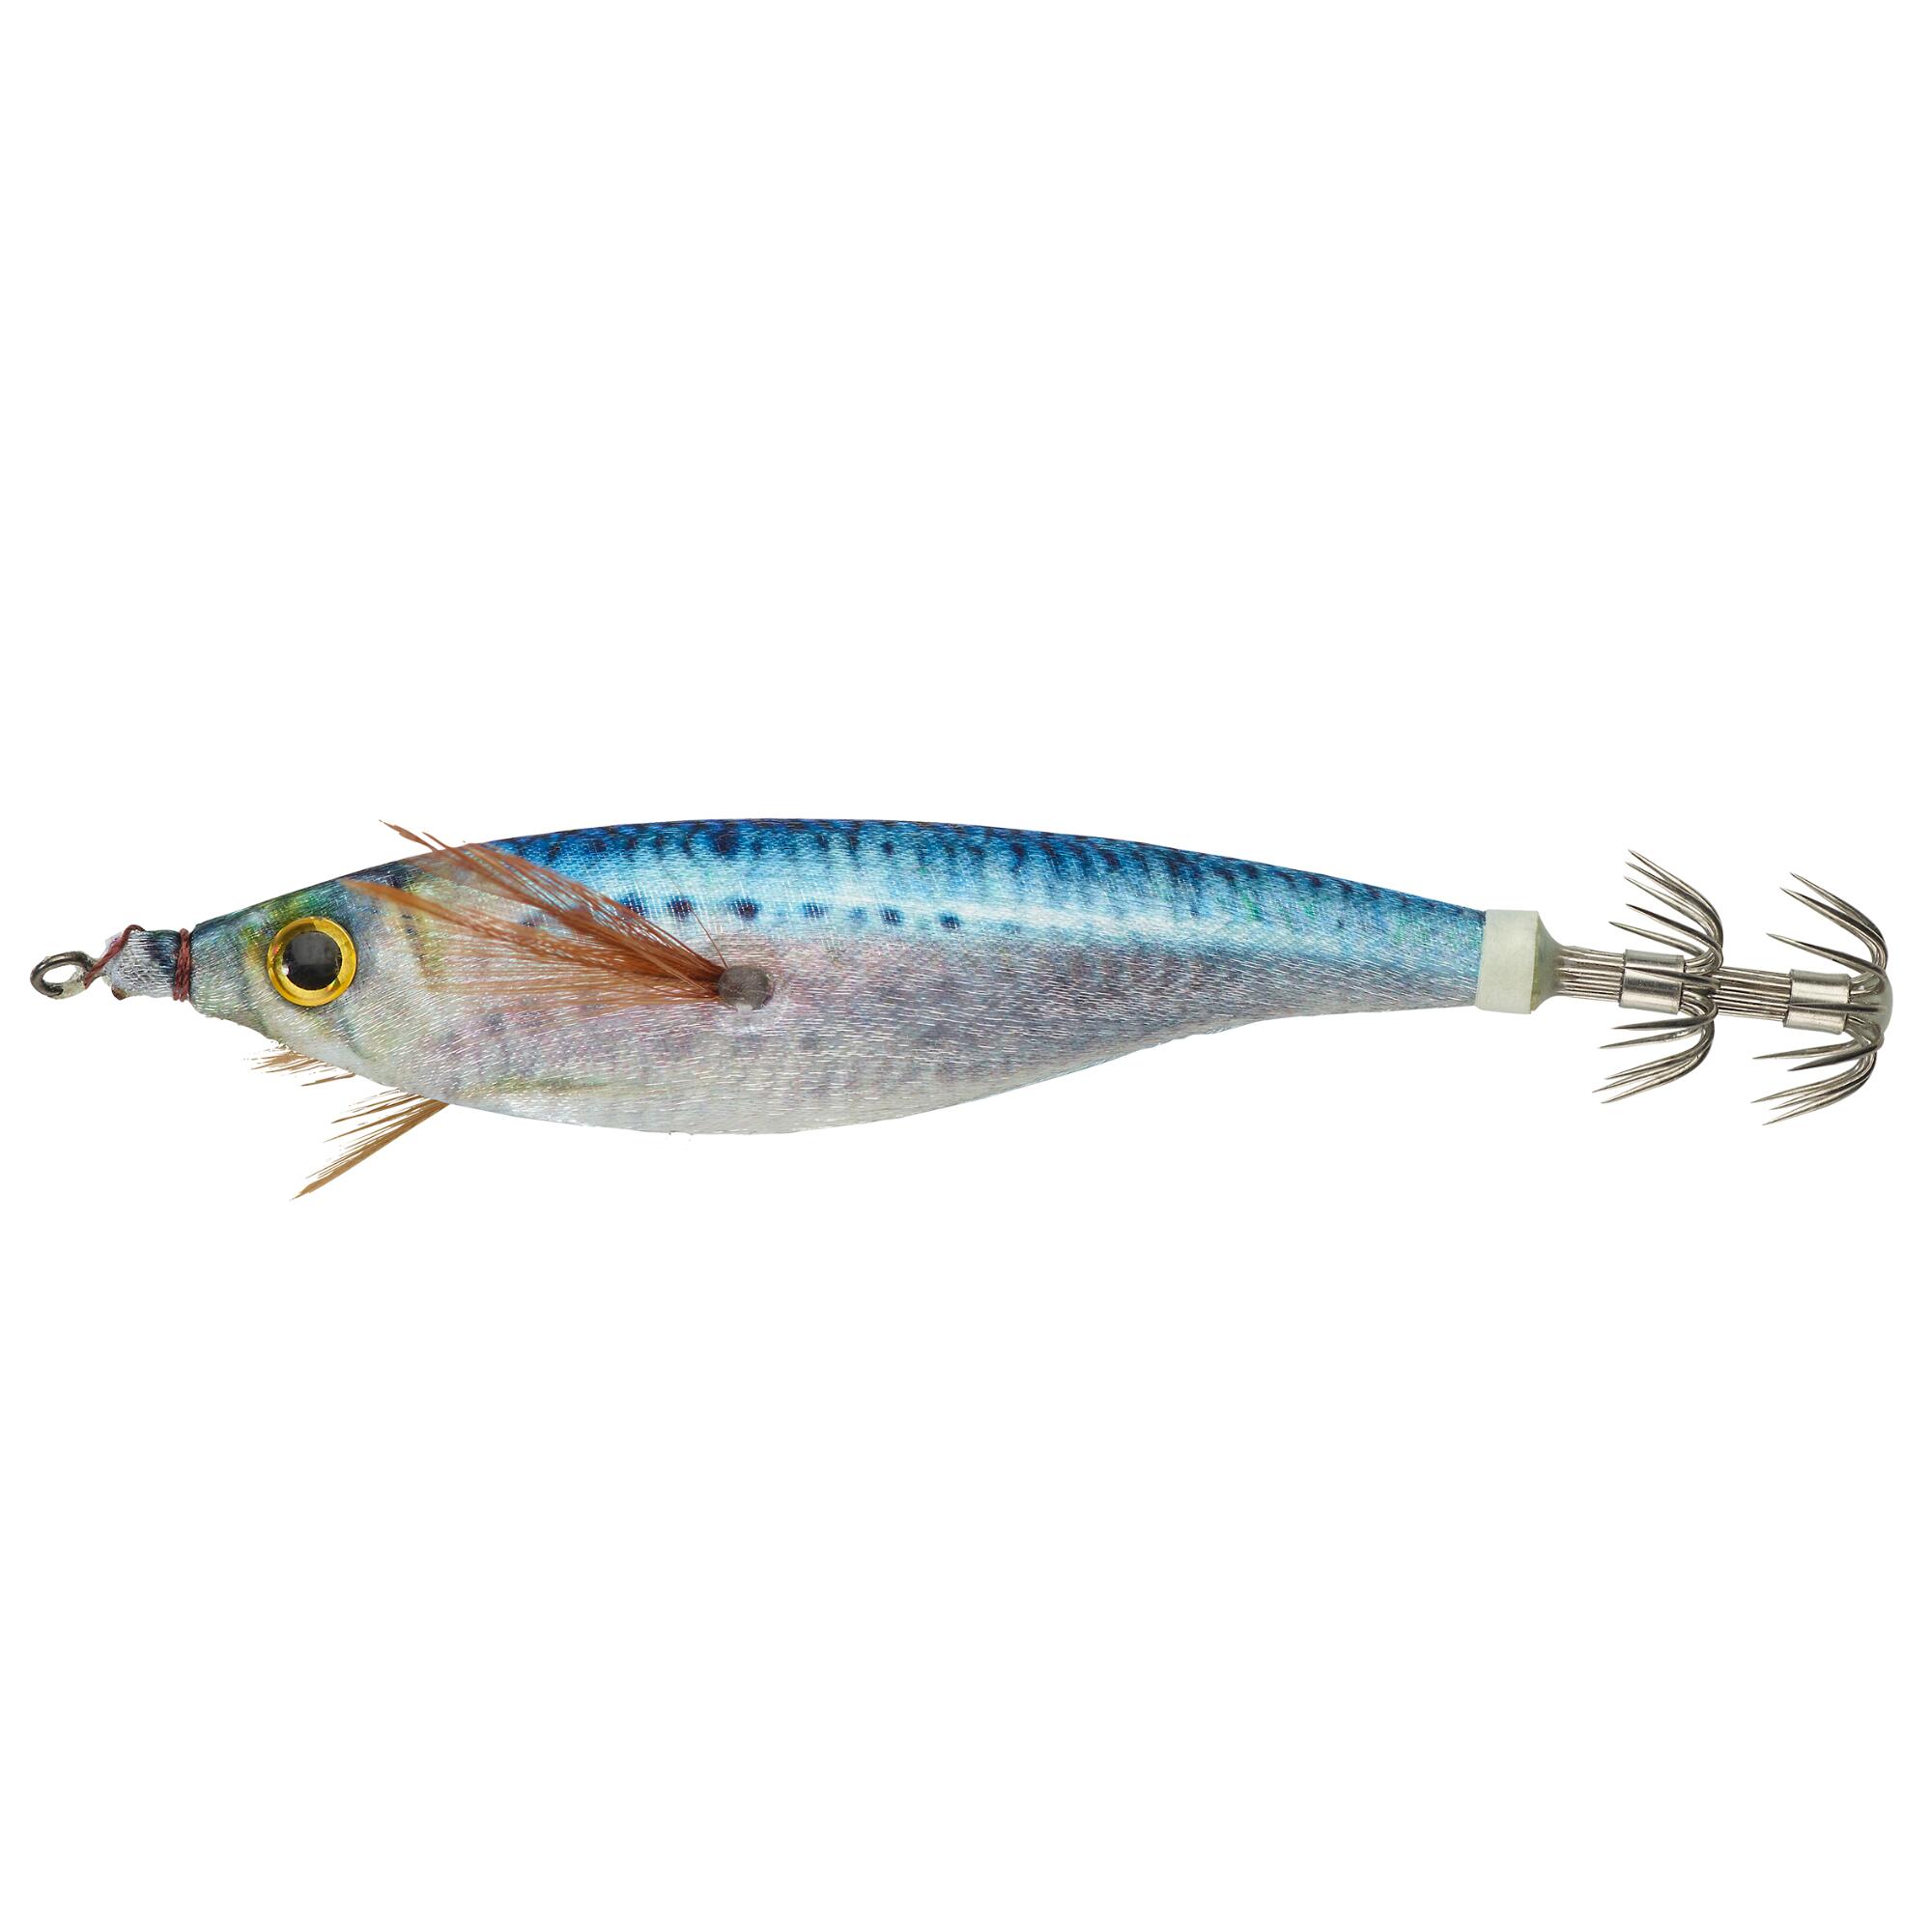 NÄƒlucÄƒ EBIFLO 2.5/110 Blue sardine pescuit la calamari